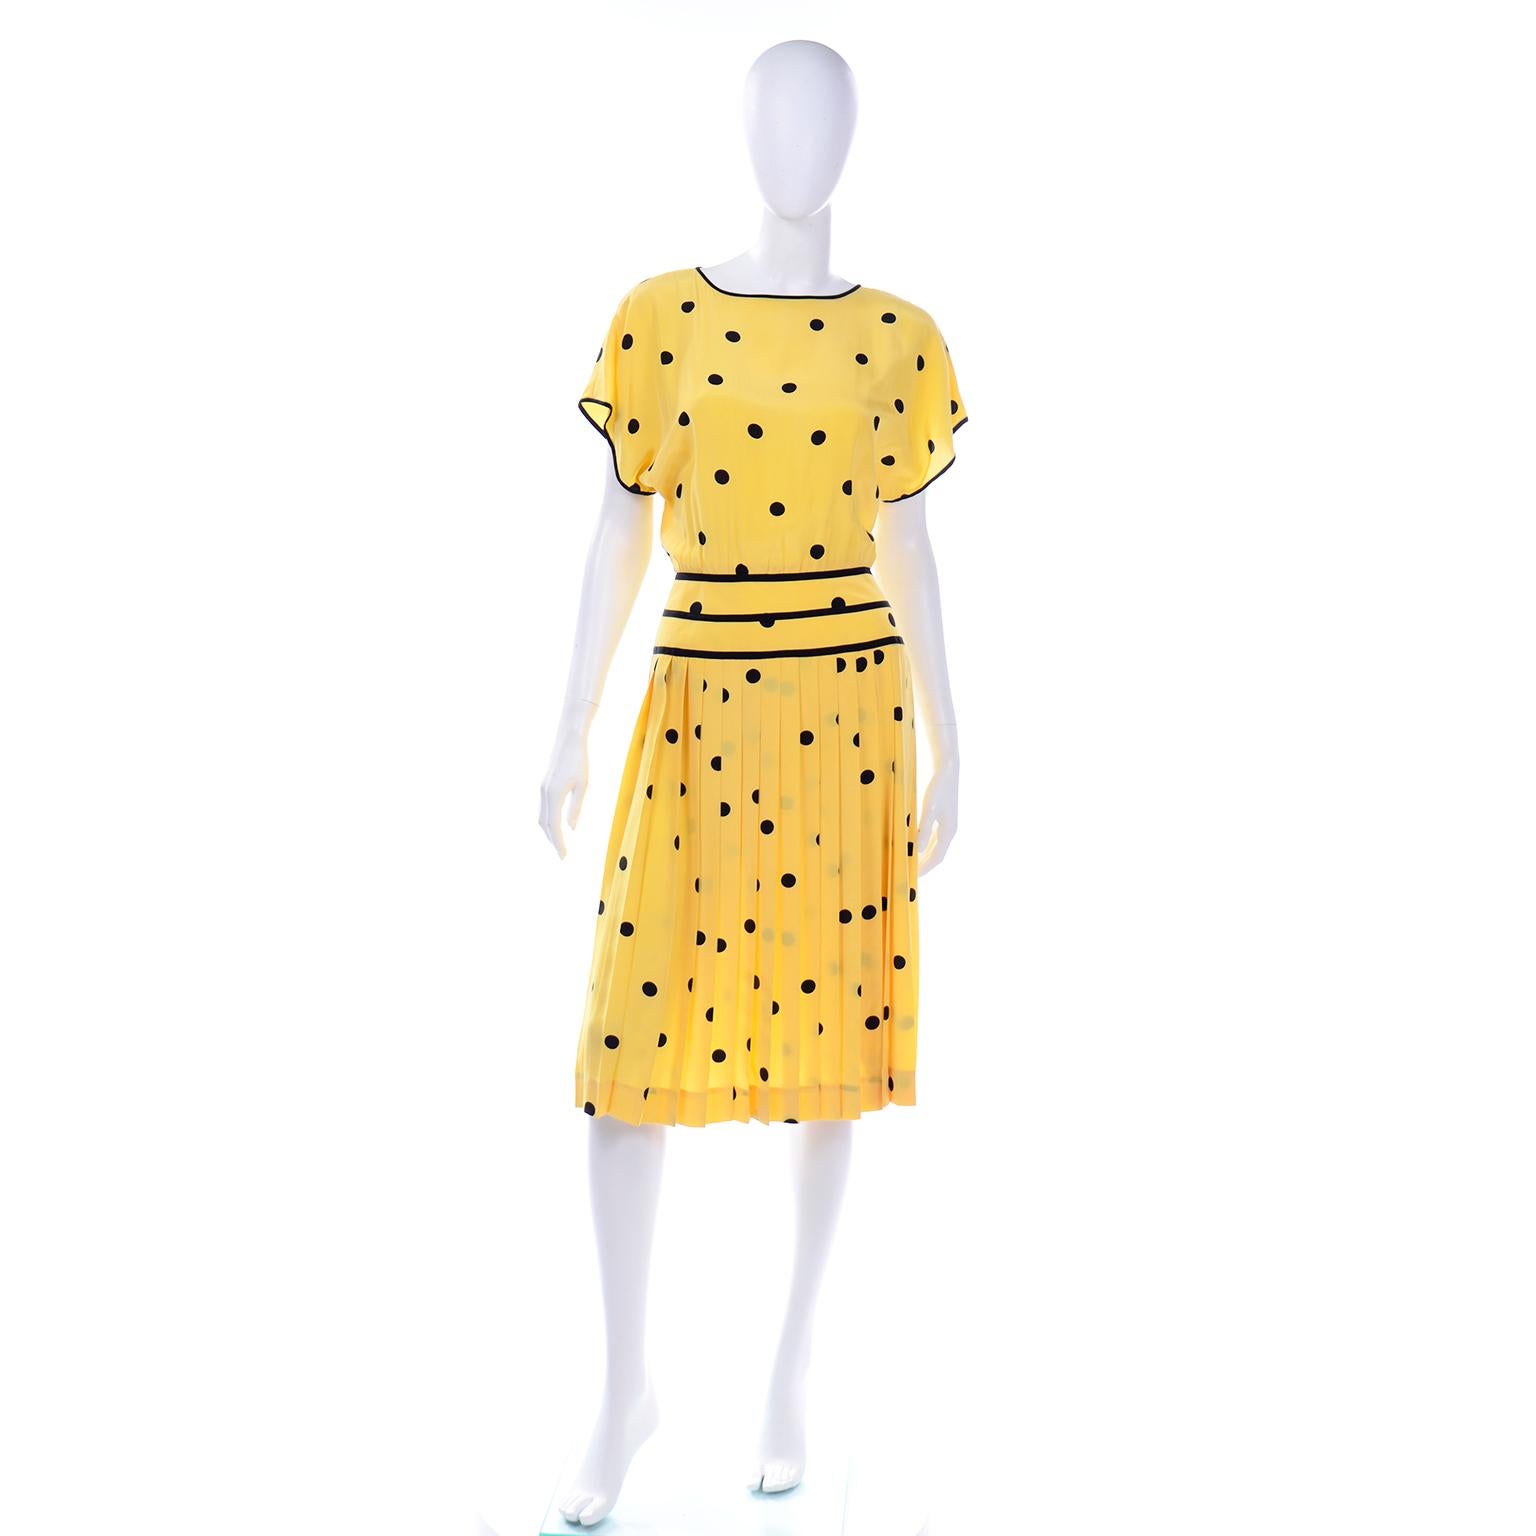 Voici une très jolie robe vintage à manches courtes d'Albert Nipon, en soie jaune luxueuse à pois noirs. Nous adorons les robes vintage Albert Nipon et la qualité des tissus et des imprimés utilisés. Pearl, la femme d'Albert, était la styliste de la